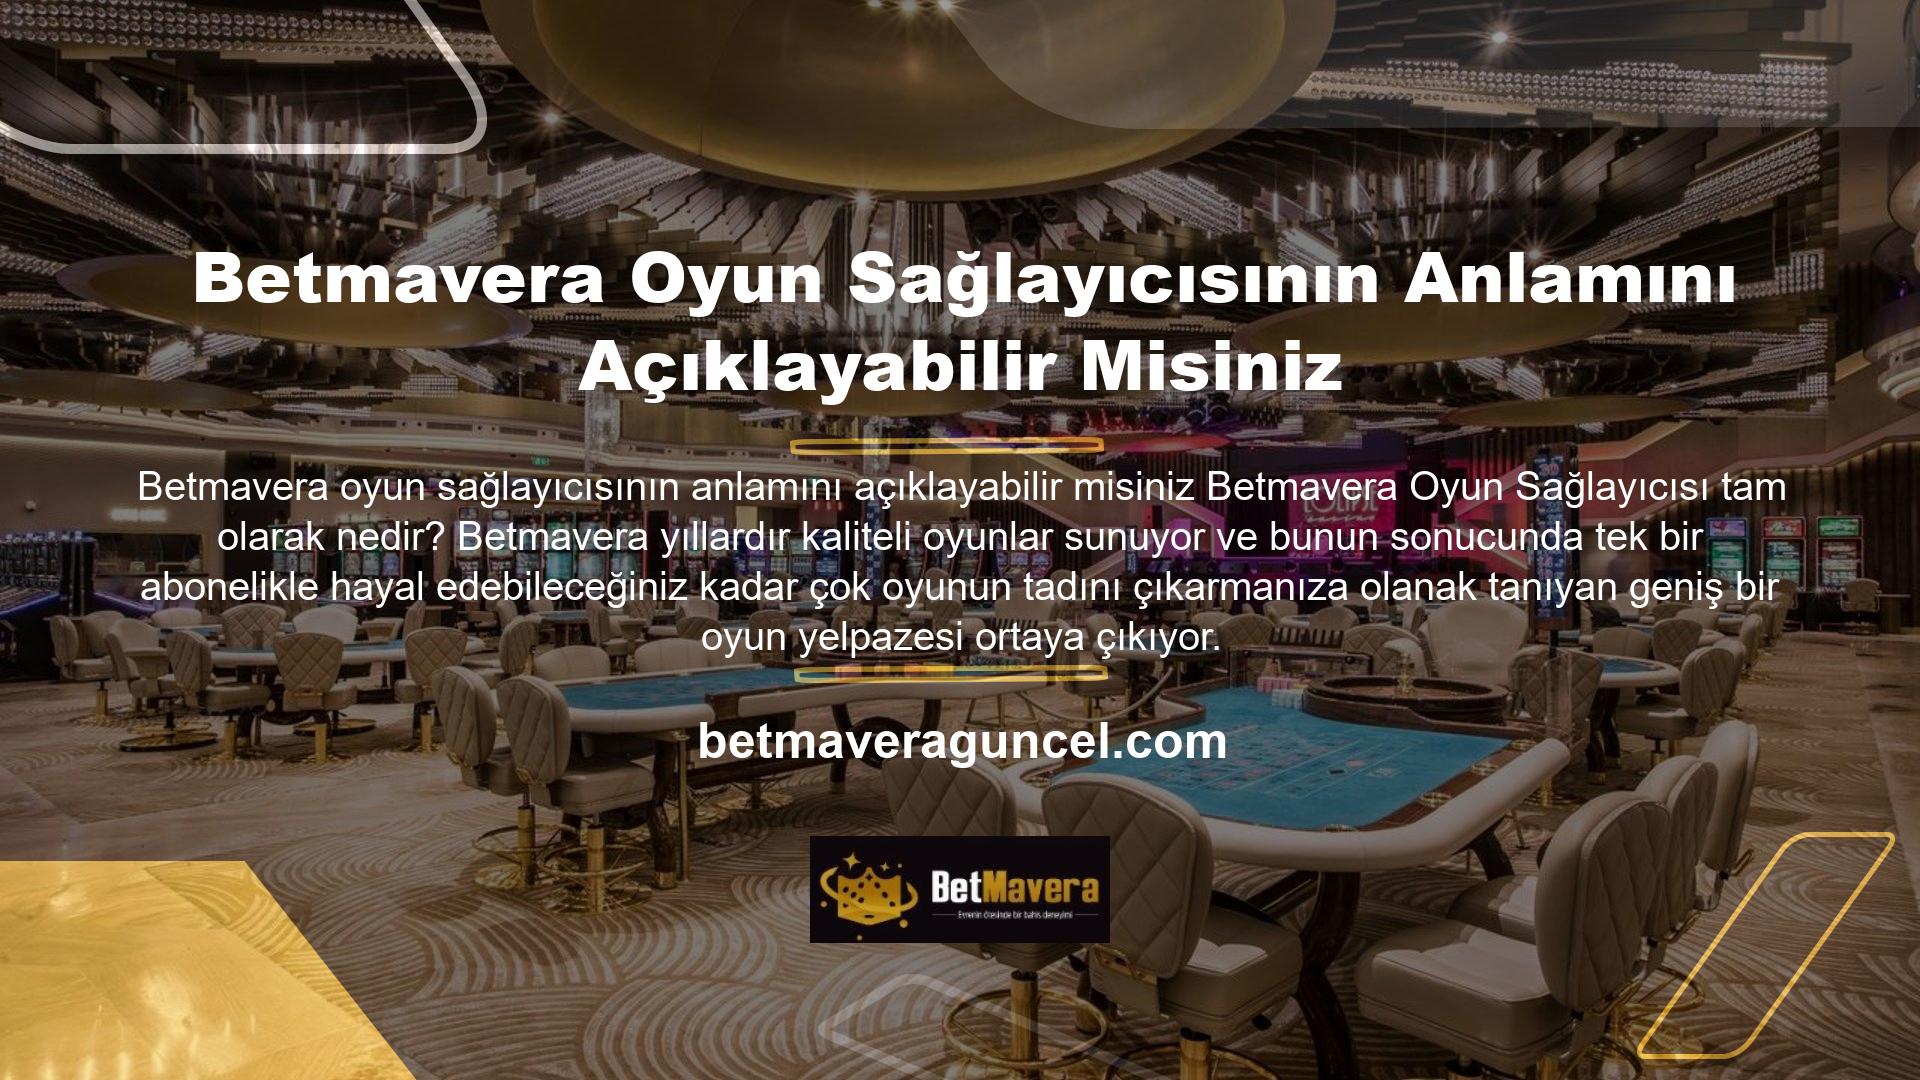 Betmavera, tüm oyuncular için kapsamlı bir Casino, canlı Casino ve bahis oyunları yelpazesi sunar